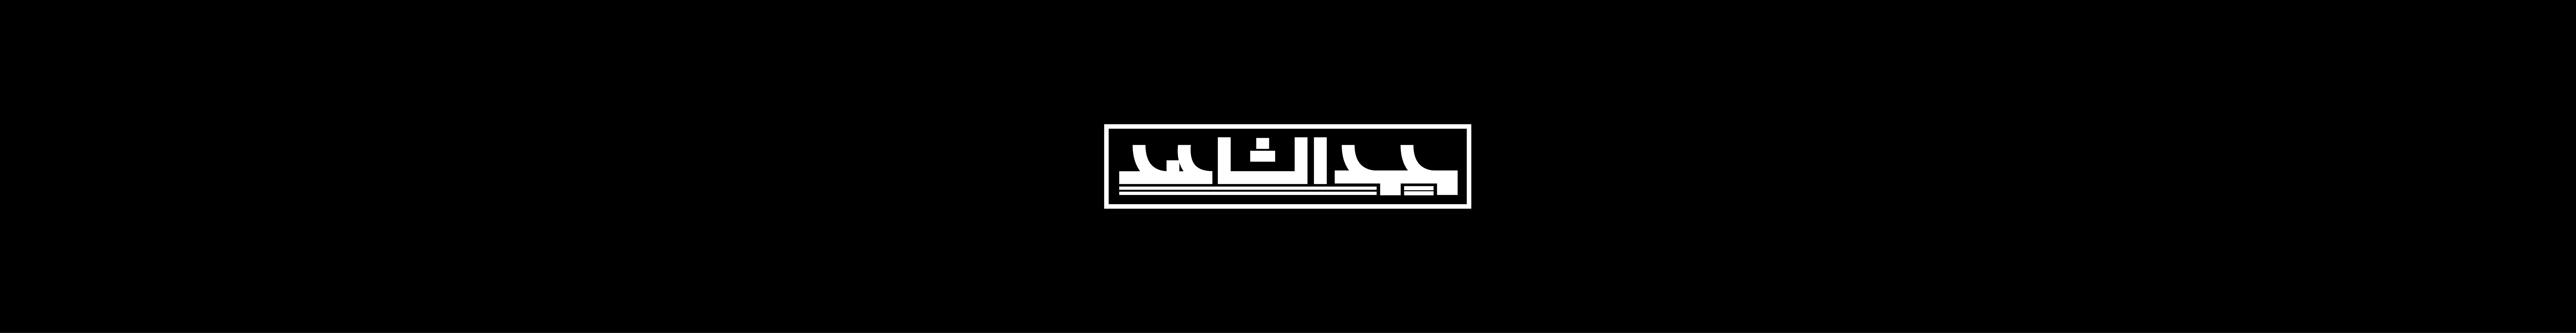 Muhamed Eshahed's profile banner